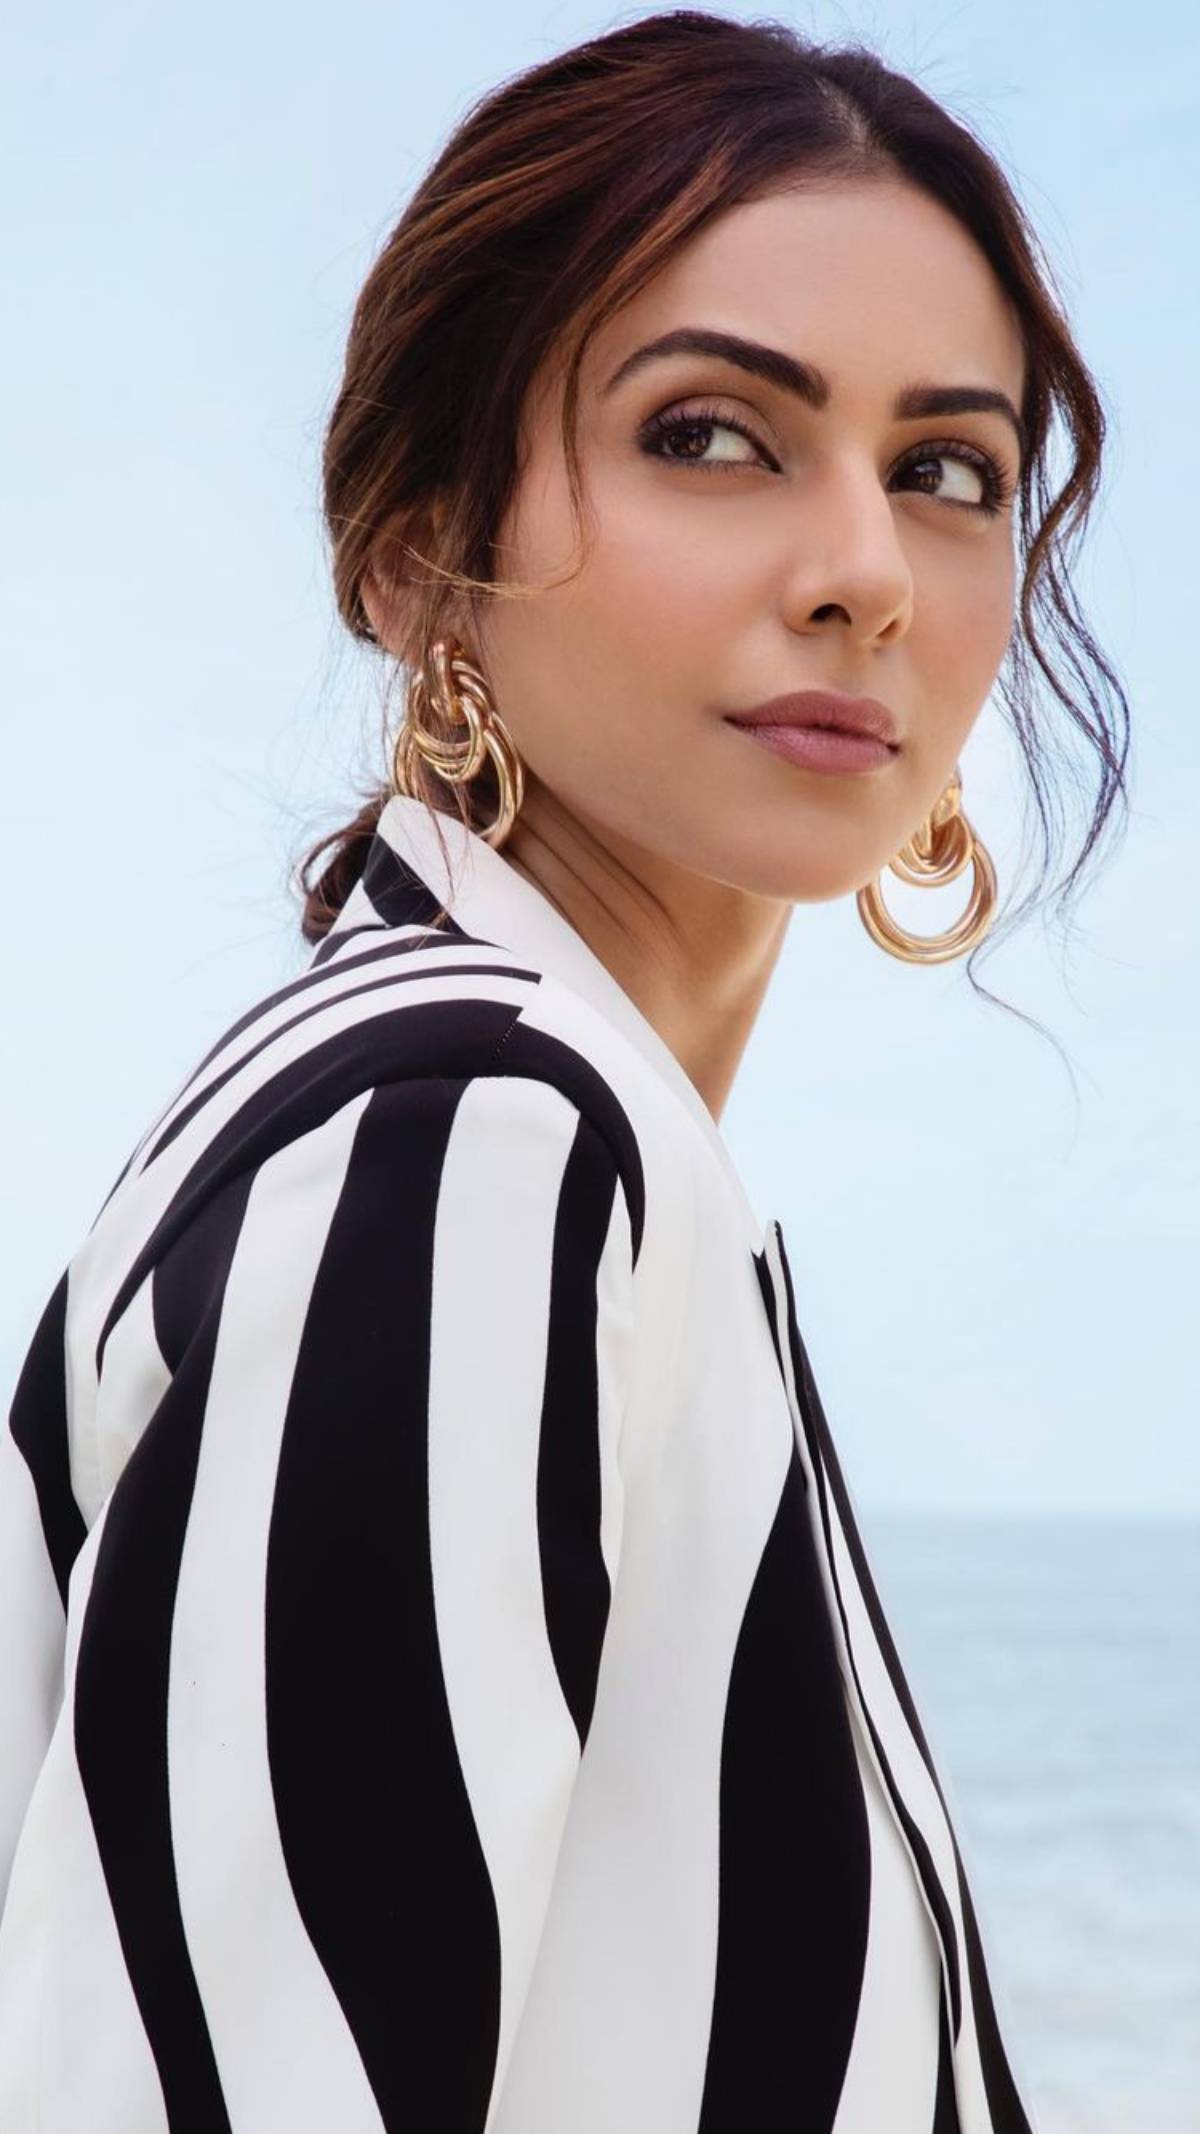 Rakul Preet Singh accessorises her look with a pair of golden earrings